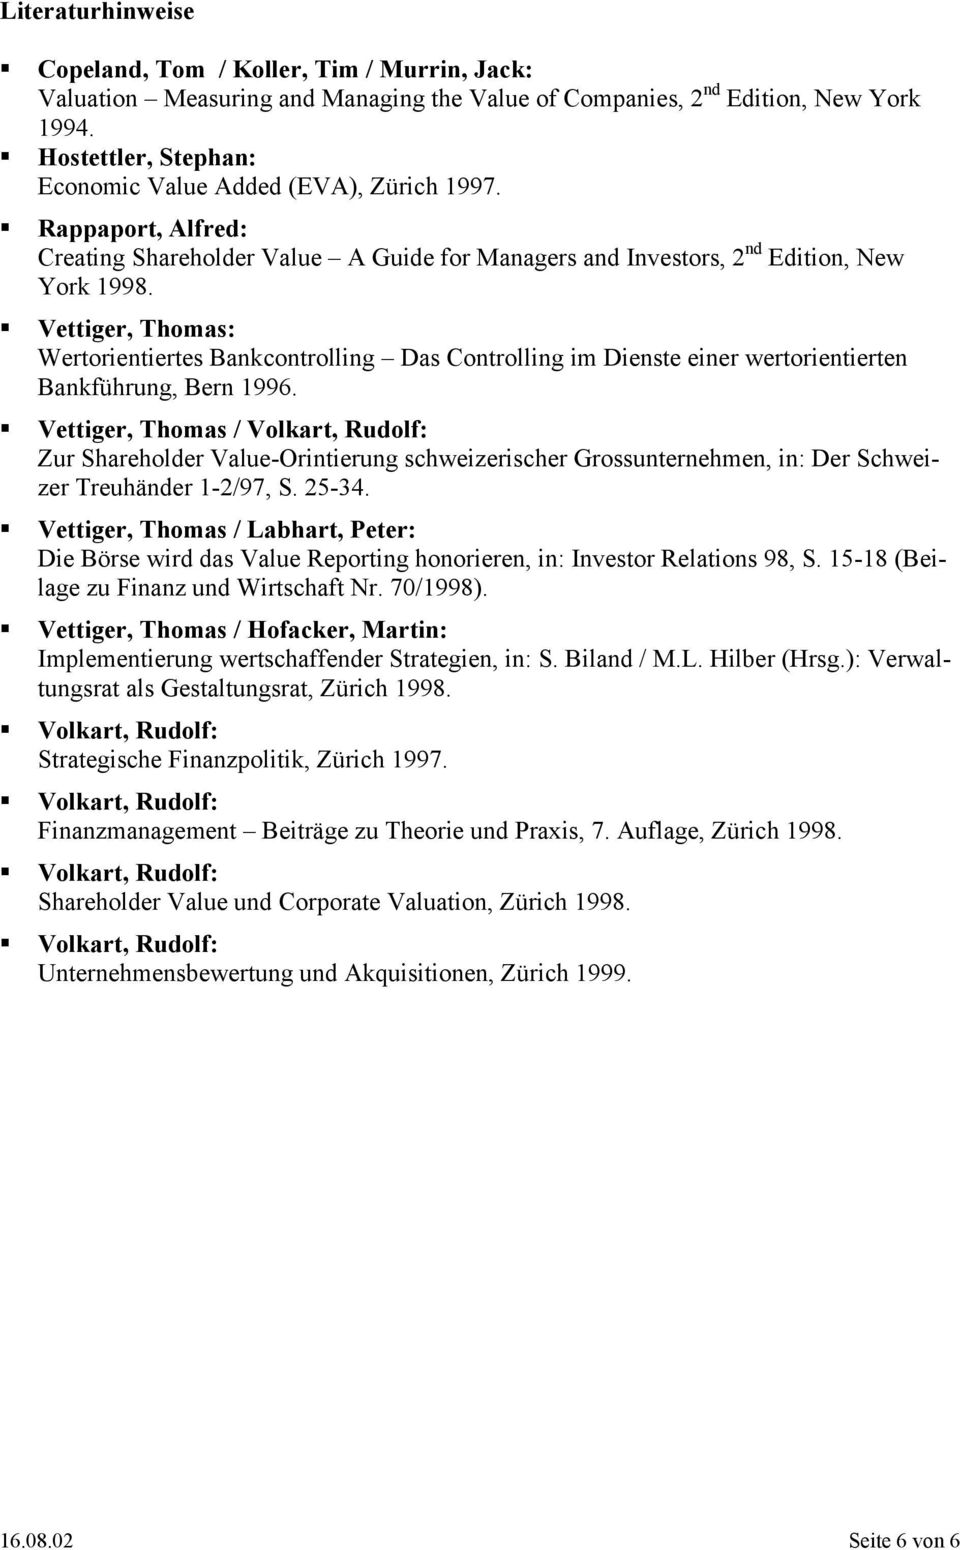 !"Veiger, homas: Werorienieres Bankconrolling Das Conrolling im Diense einer werorienieren Bankführung, Bern 1996.